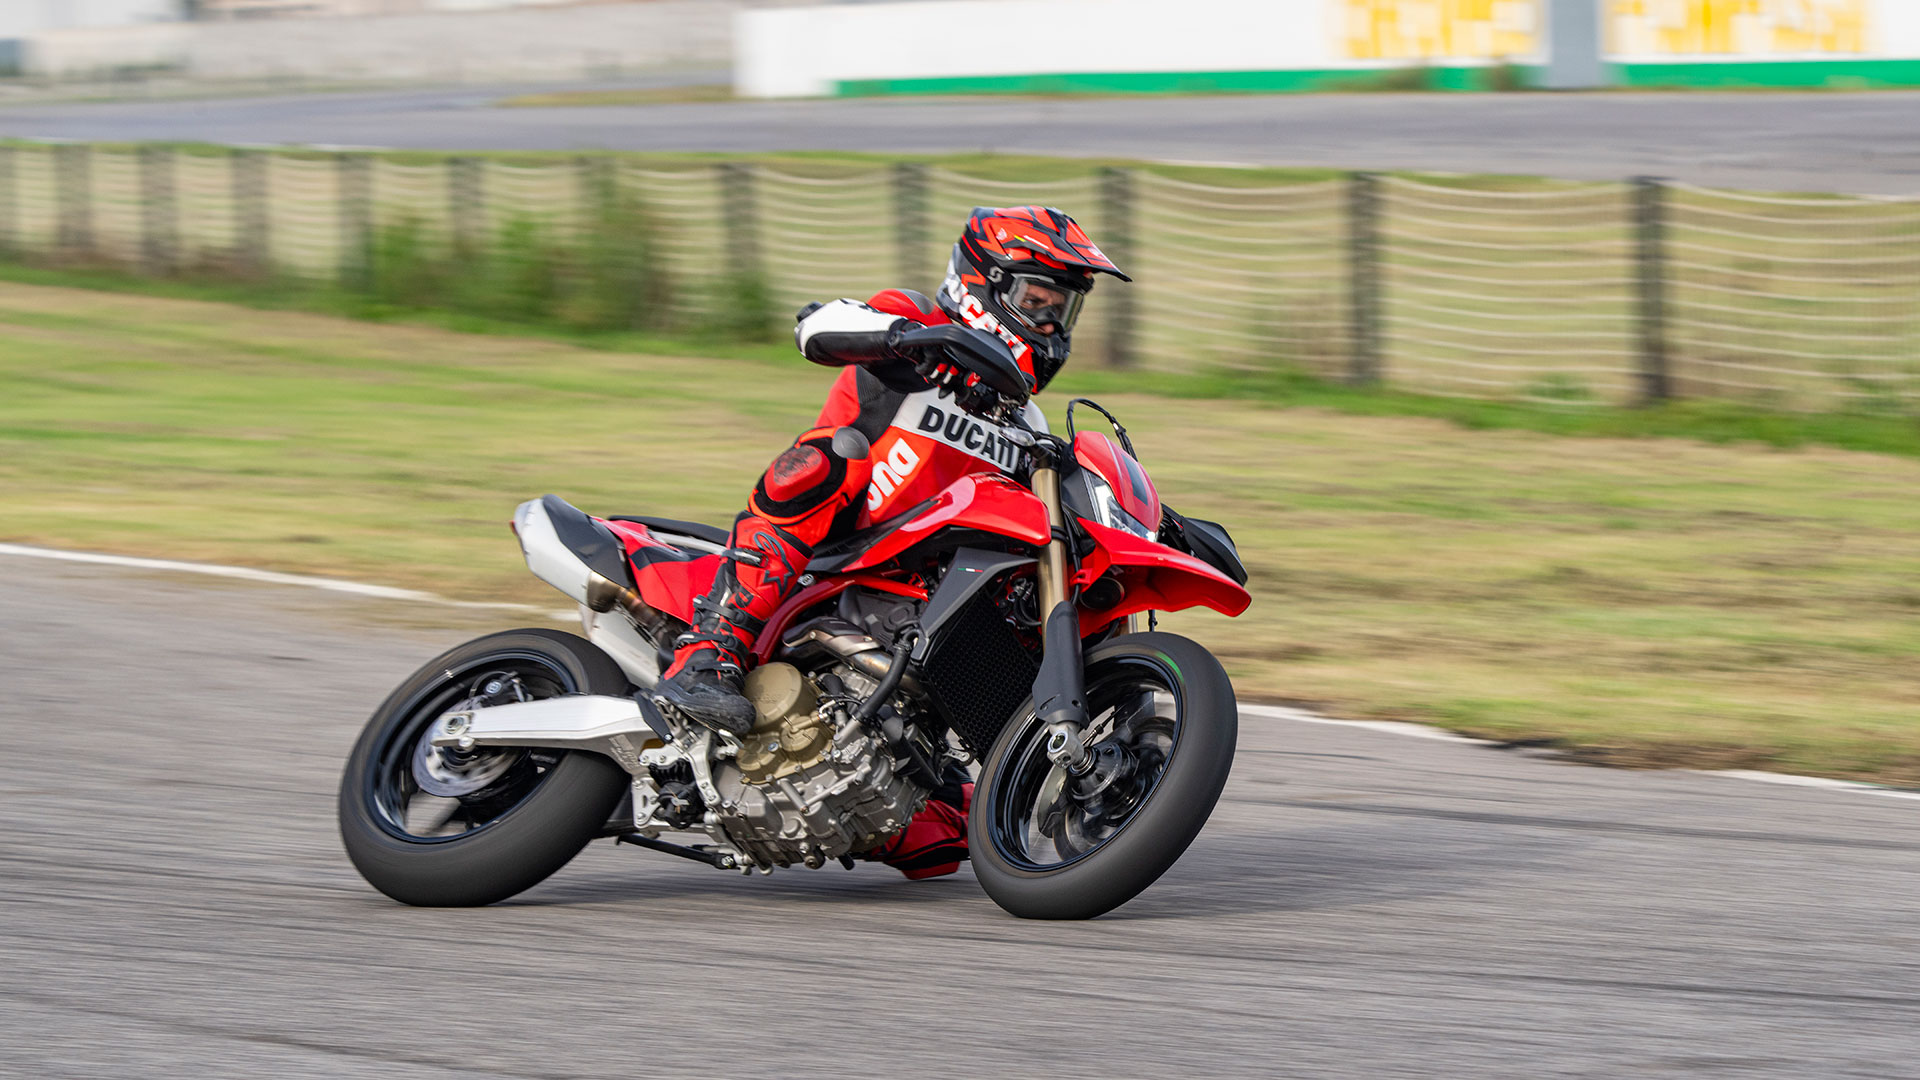 La nueva Ducati Hypermotard 698 Mono quiere reventar el mercado a base de potencia y tecnología derivada de las Panigale